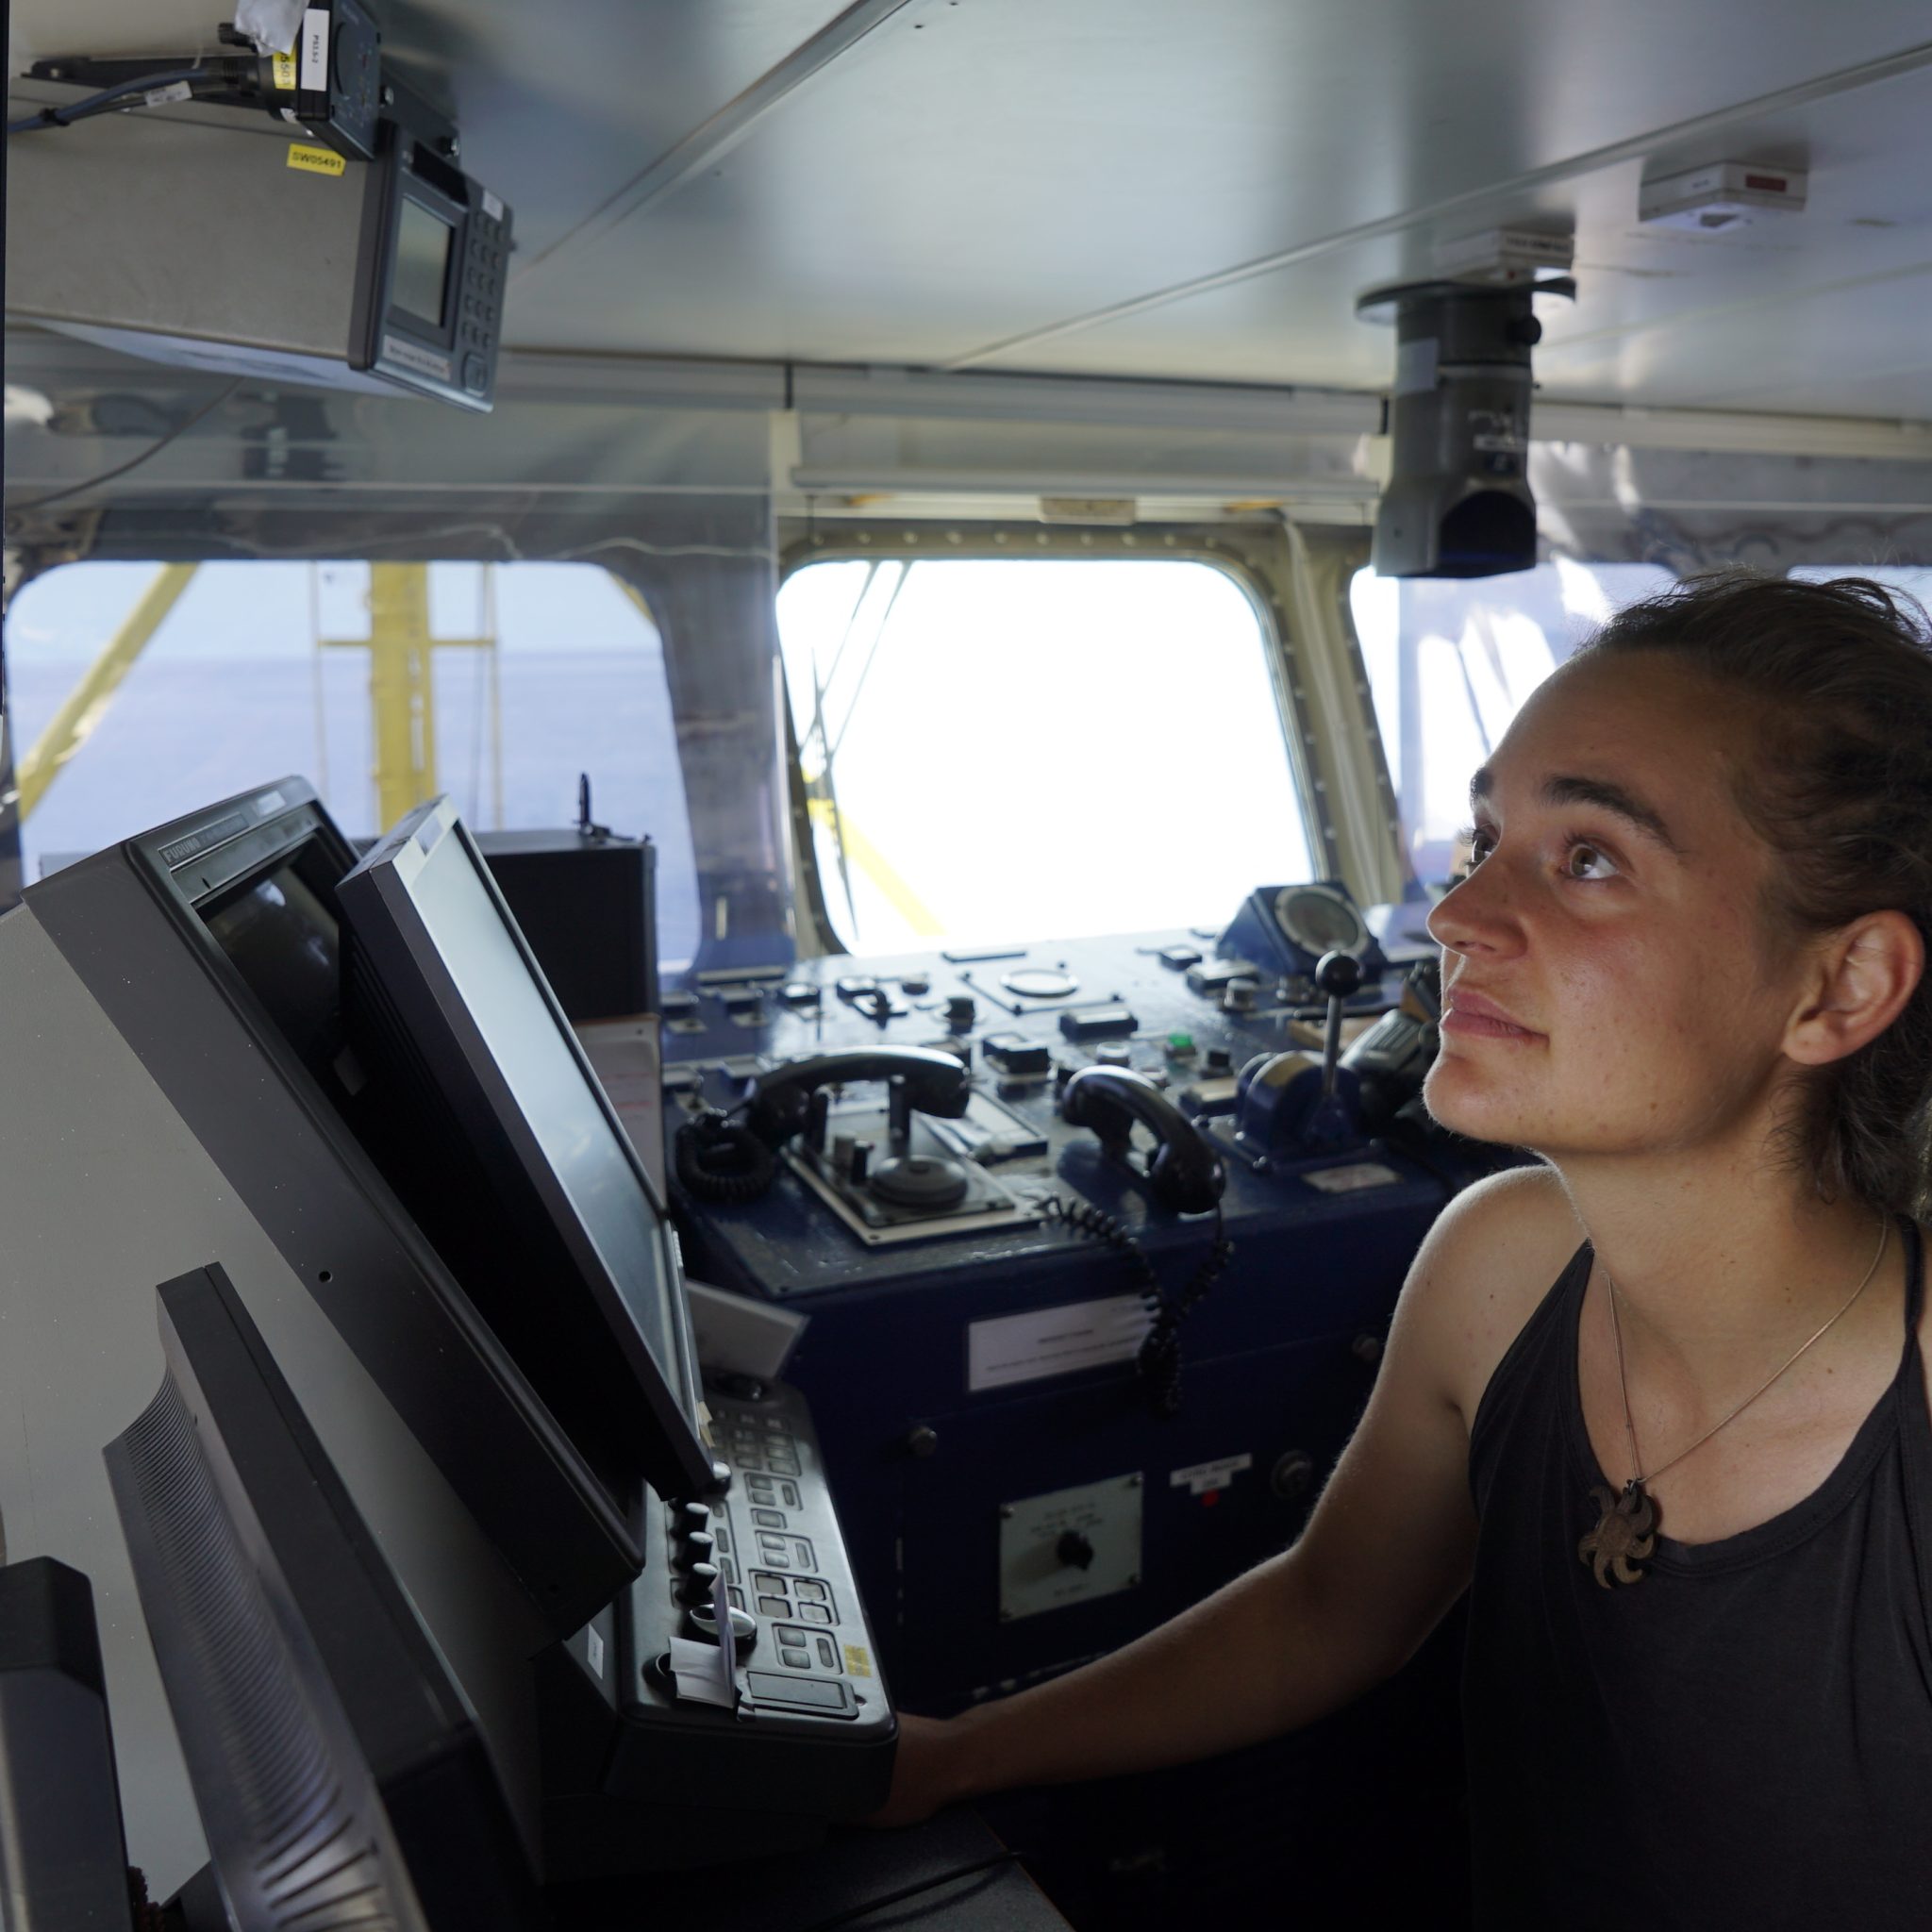 ‘Deze ontscheping had meer dan twee weken geleden moeten plaatsvinden en had gecoördineerd moeten worden in plaats van belemmerd door de autoriteiten’, zei kapitein Carola Rackete in een verklaring die vlak voor haar arrestatie is verzonden. (Foto Sea-Watch)